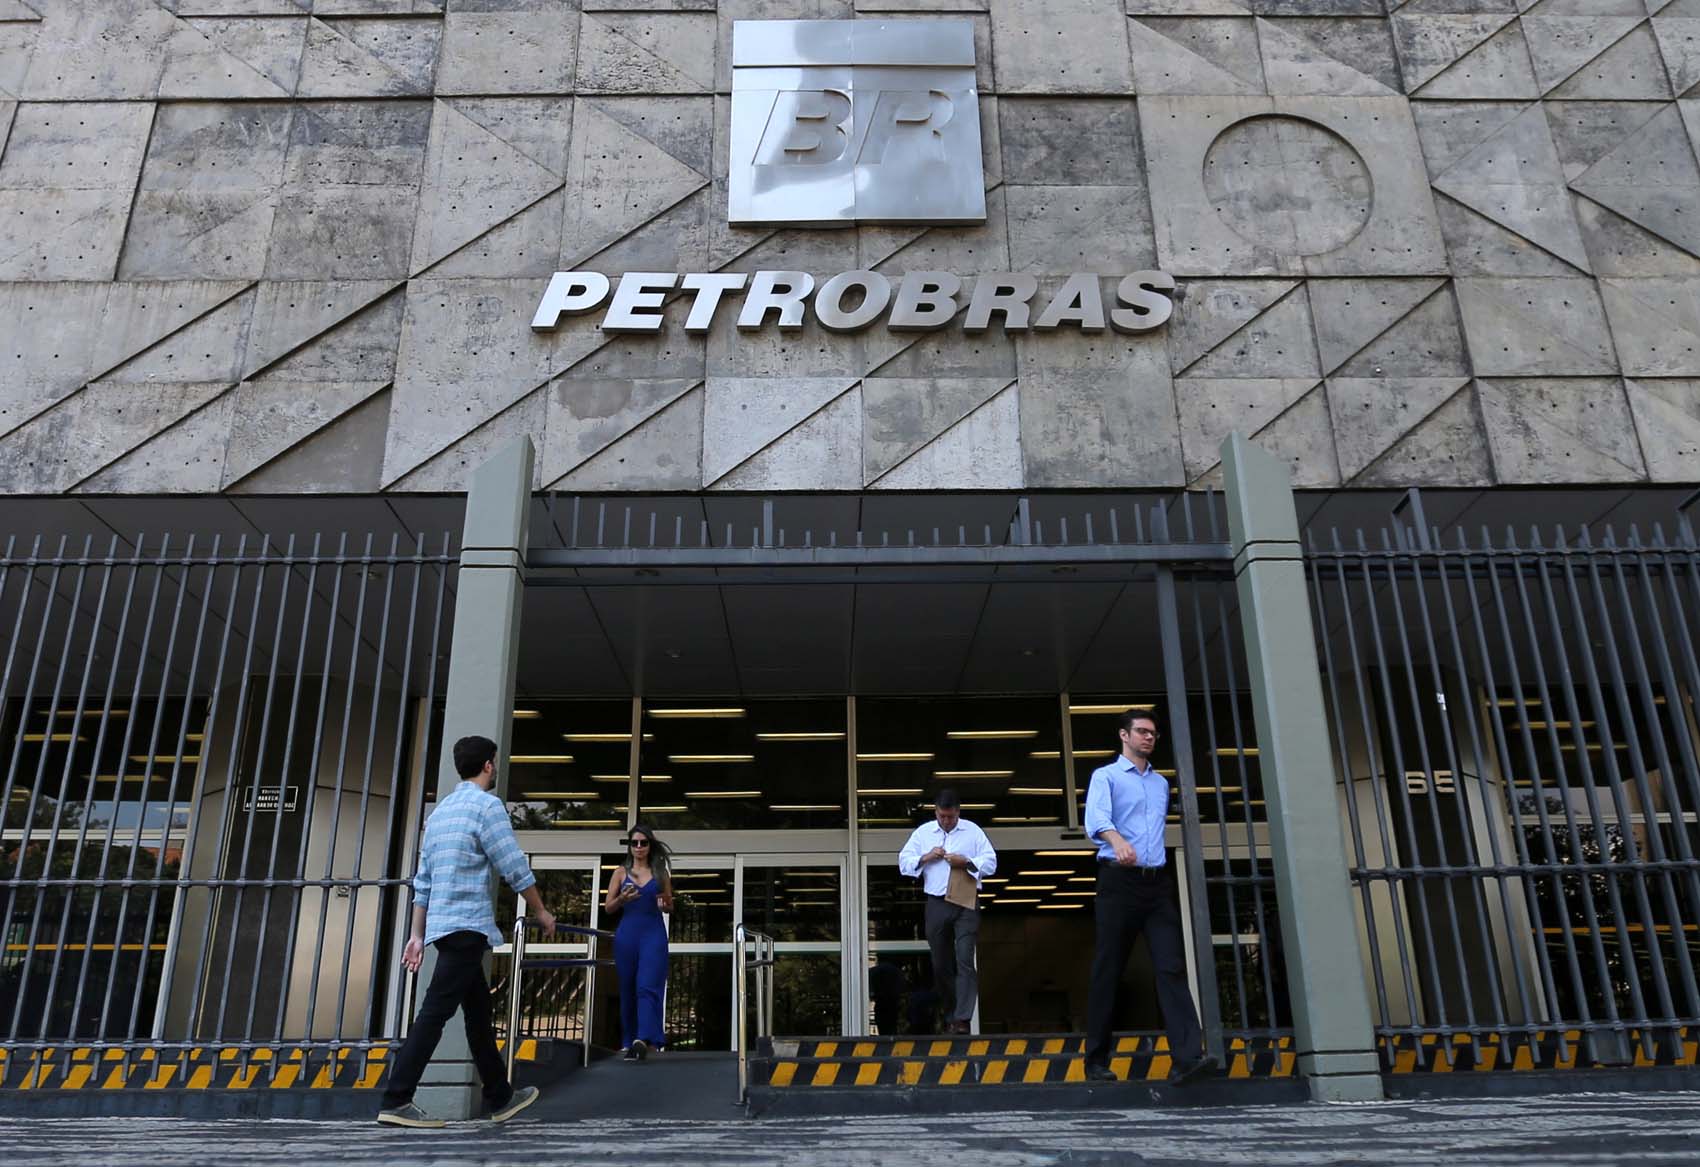 Petrobras asegura que recuperó más de 1.200 millones de dólares desviados por corrupción